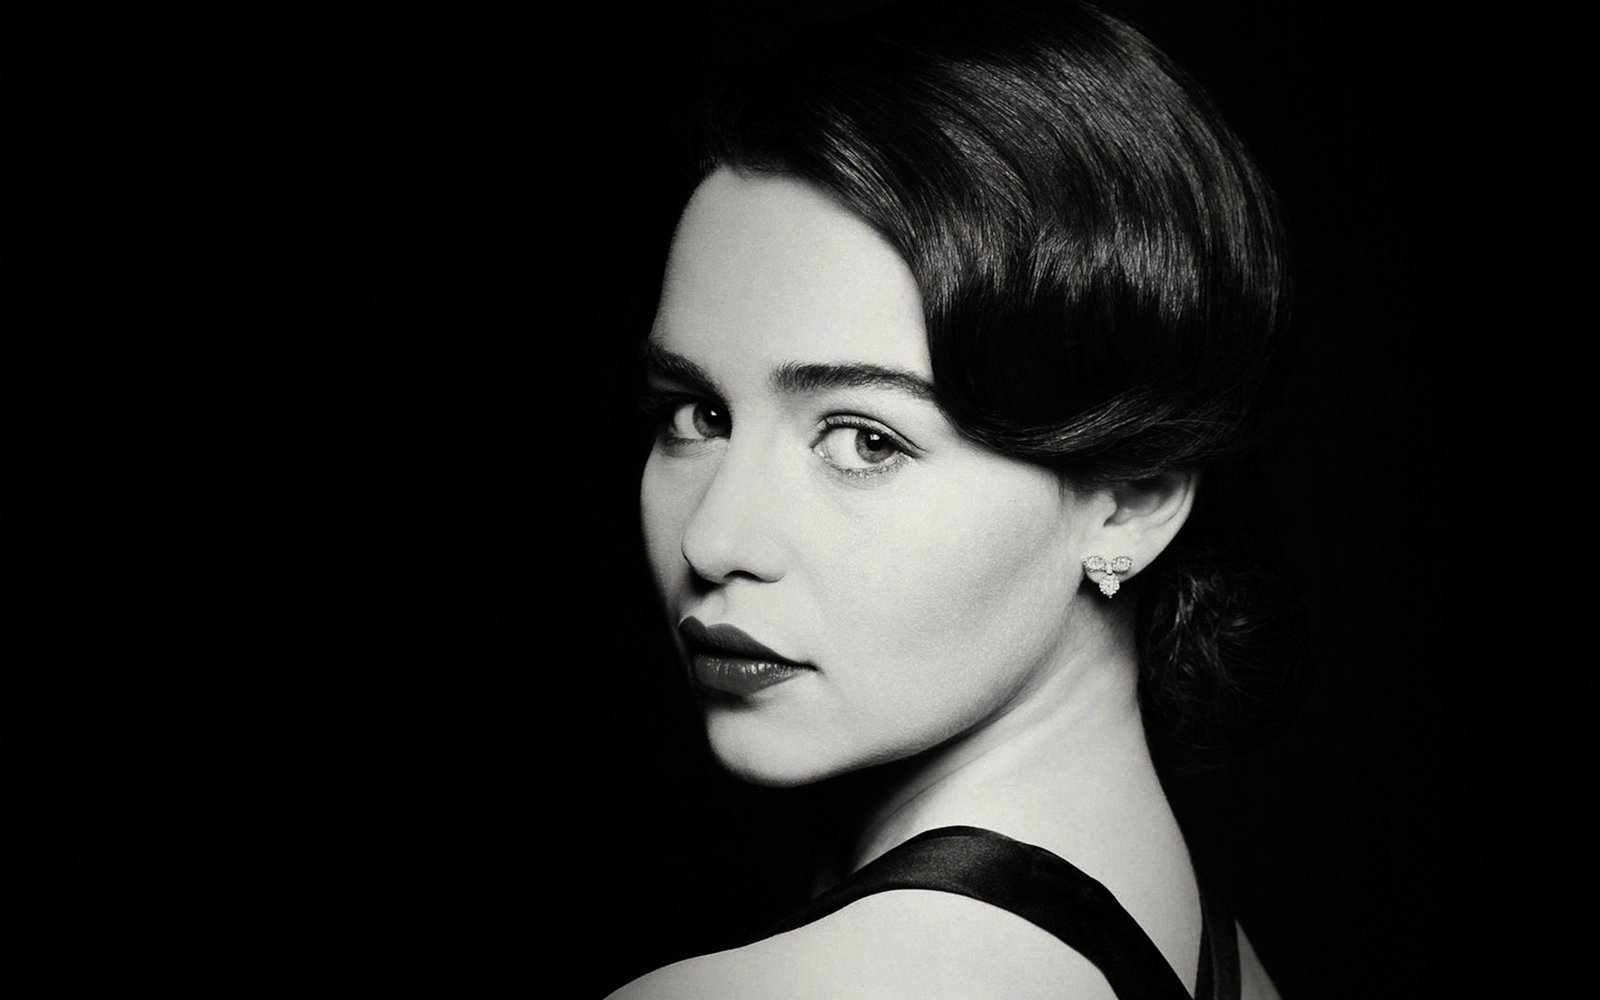 Емілія Кларк (Emilia Clarke). Біографія. Фото. Особисте життя